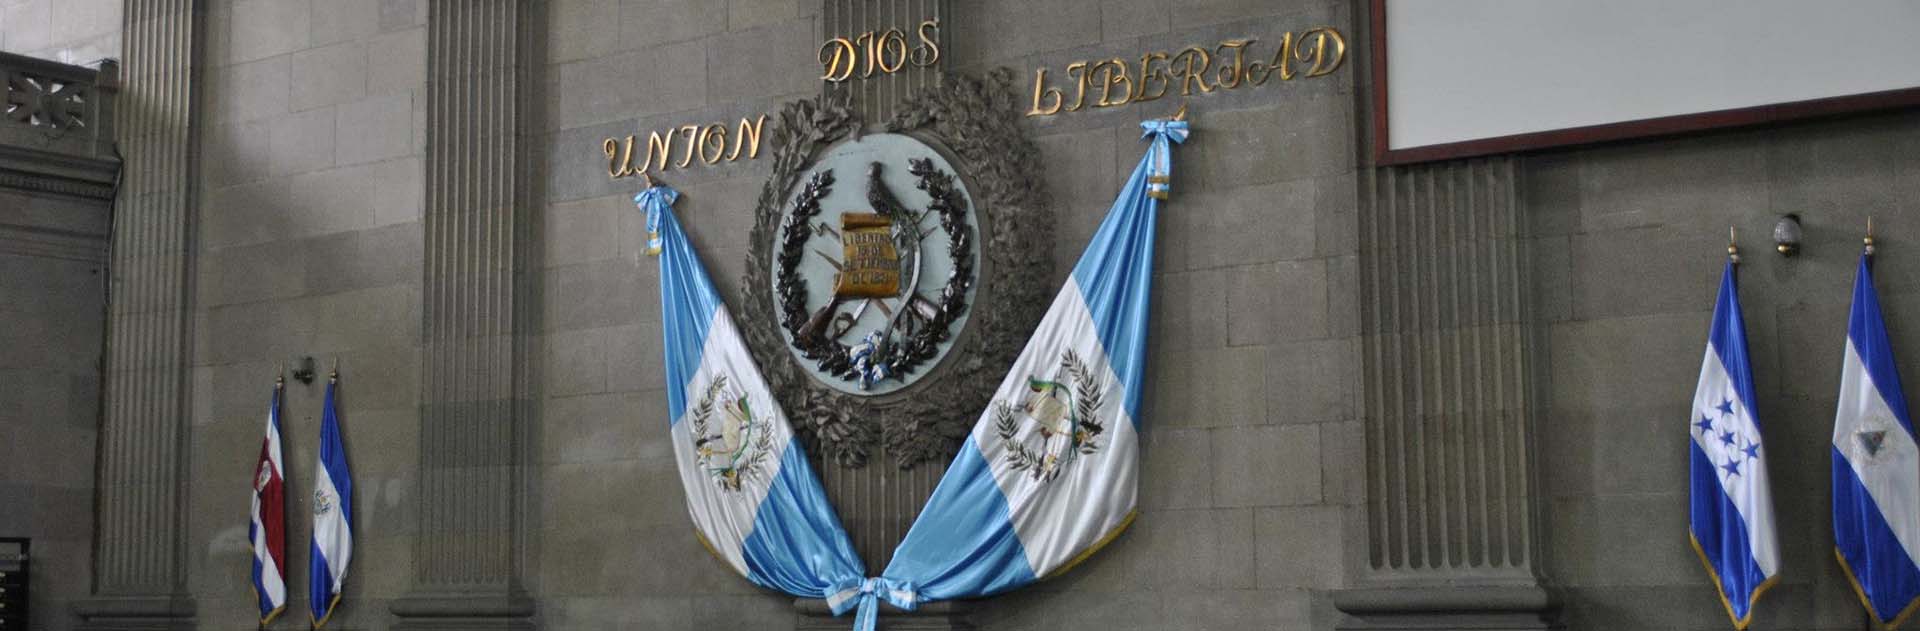 Detalle del podio presidencial del Congreso de Guatemala, con el escudo de la República, las banderas del país, y el lema "Dios, Unión y Libertad"